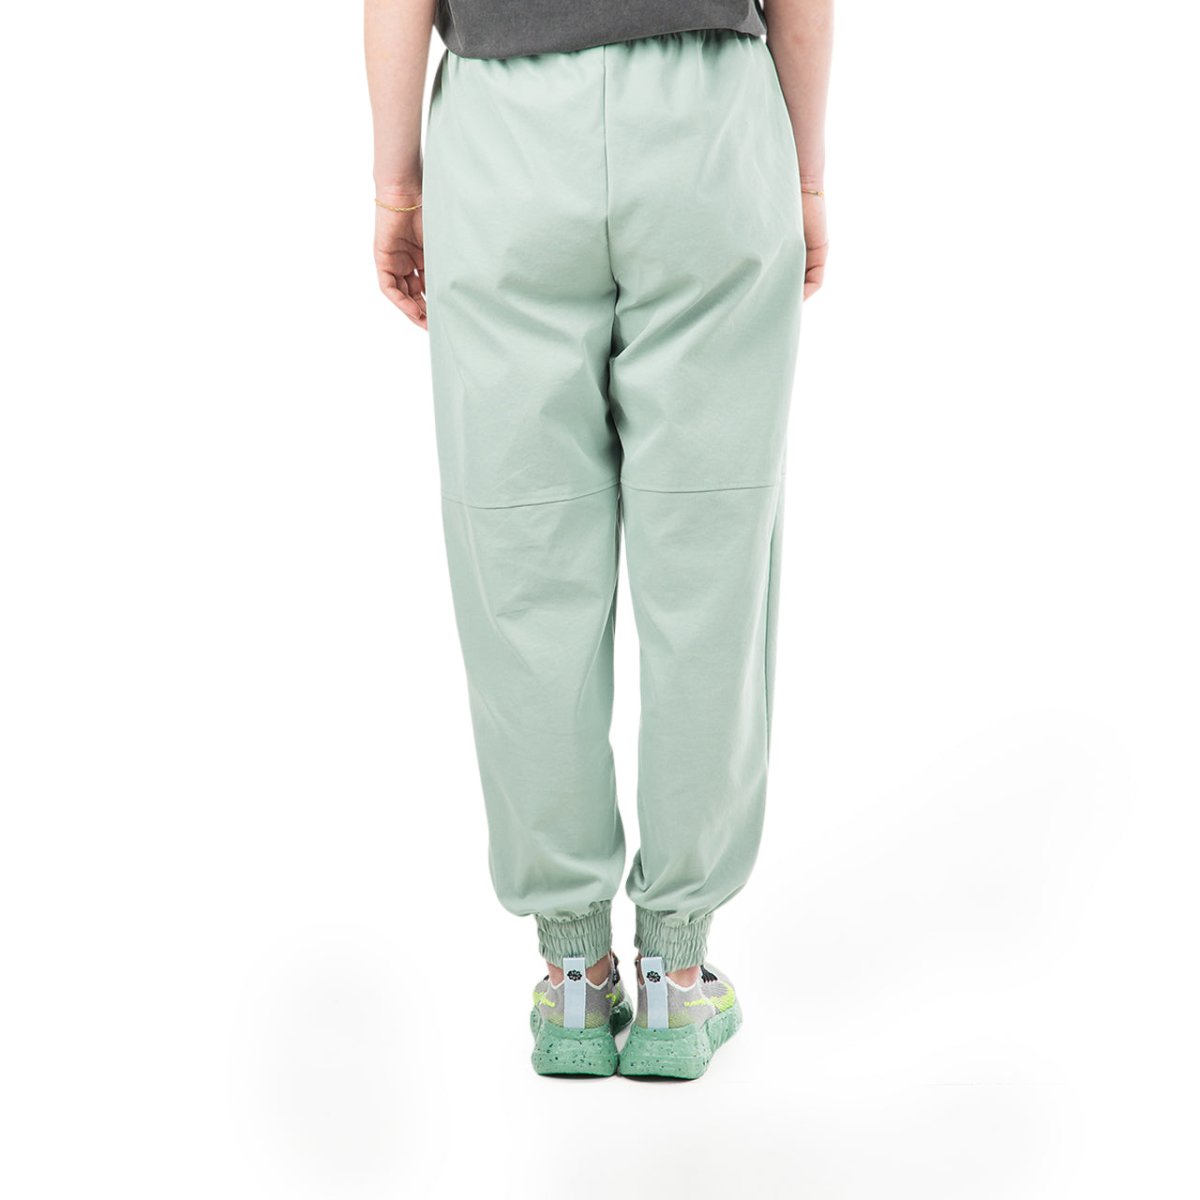 Nike Lightweight Woven Pants Green